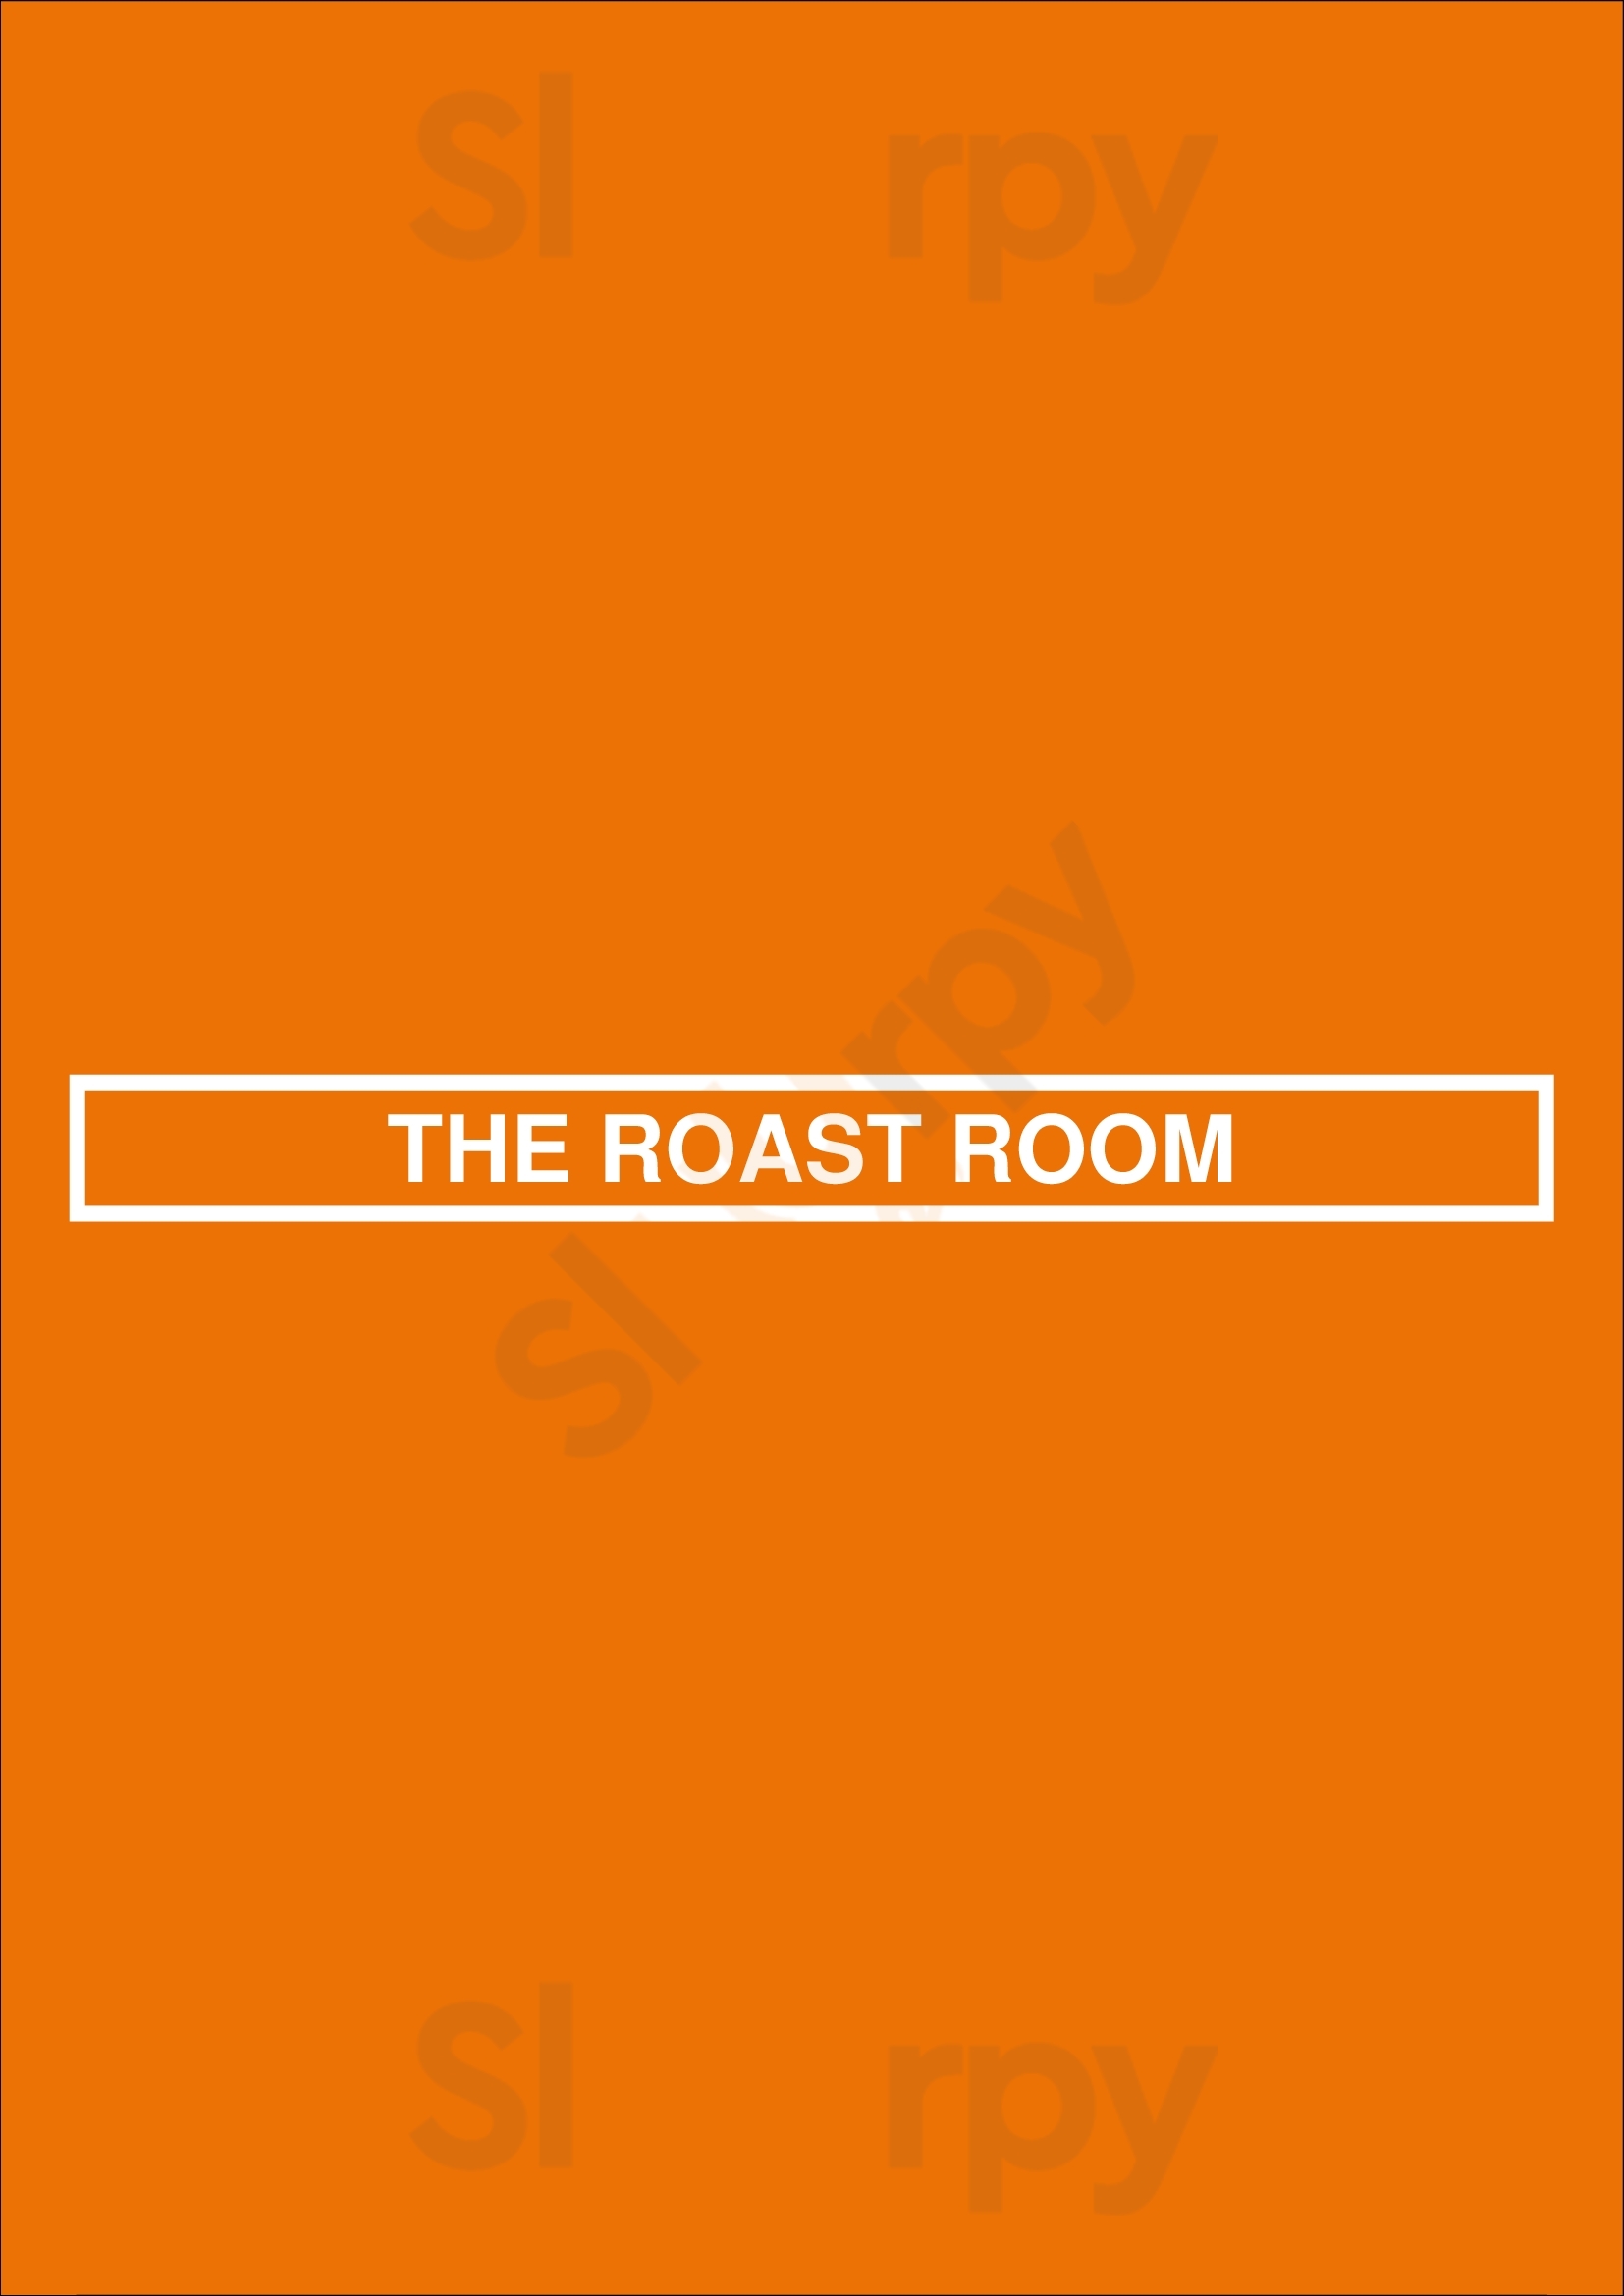 The Roast Room Amsterdam Menu - 1